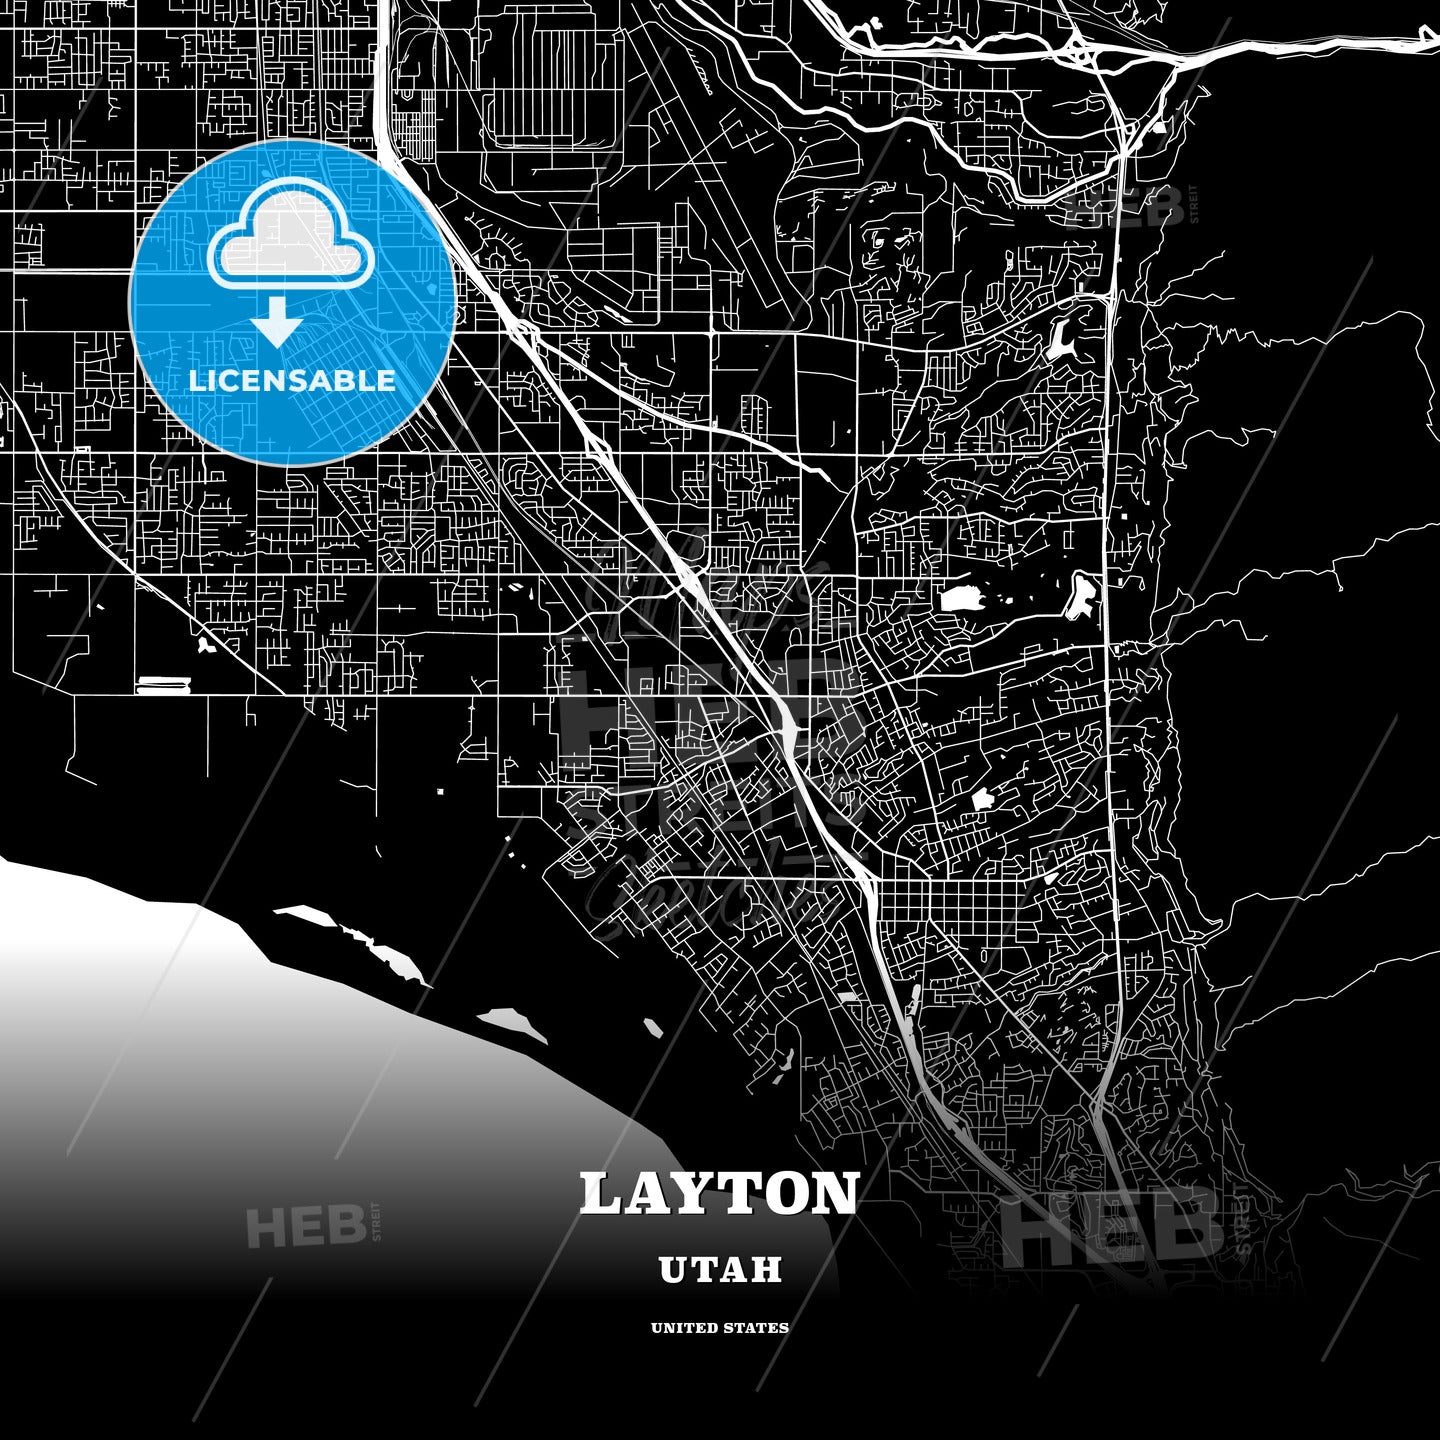 Layton, Utah, USA map